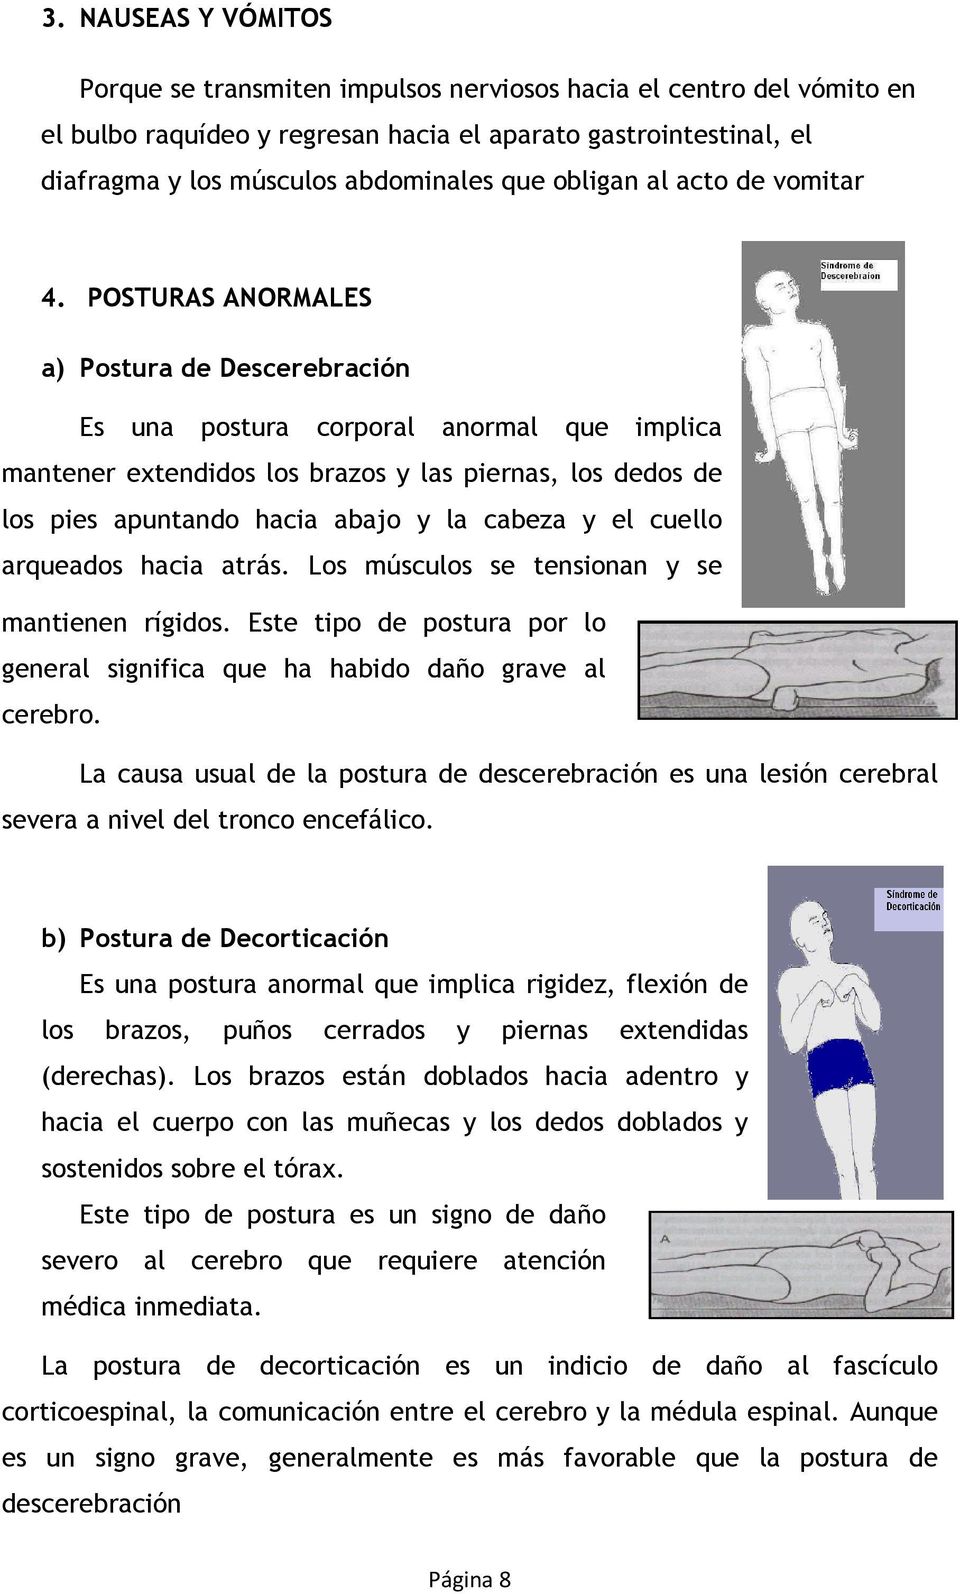 POSTURAS ANORMALES a) Postura de Descerebración Es una postura corporal anormal que implica mantener extendidos los brazos y las piernas, los dedos de los pies apuntando hacia abajo y la cabeza y el